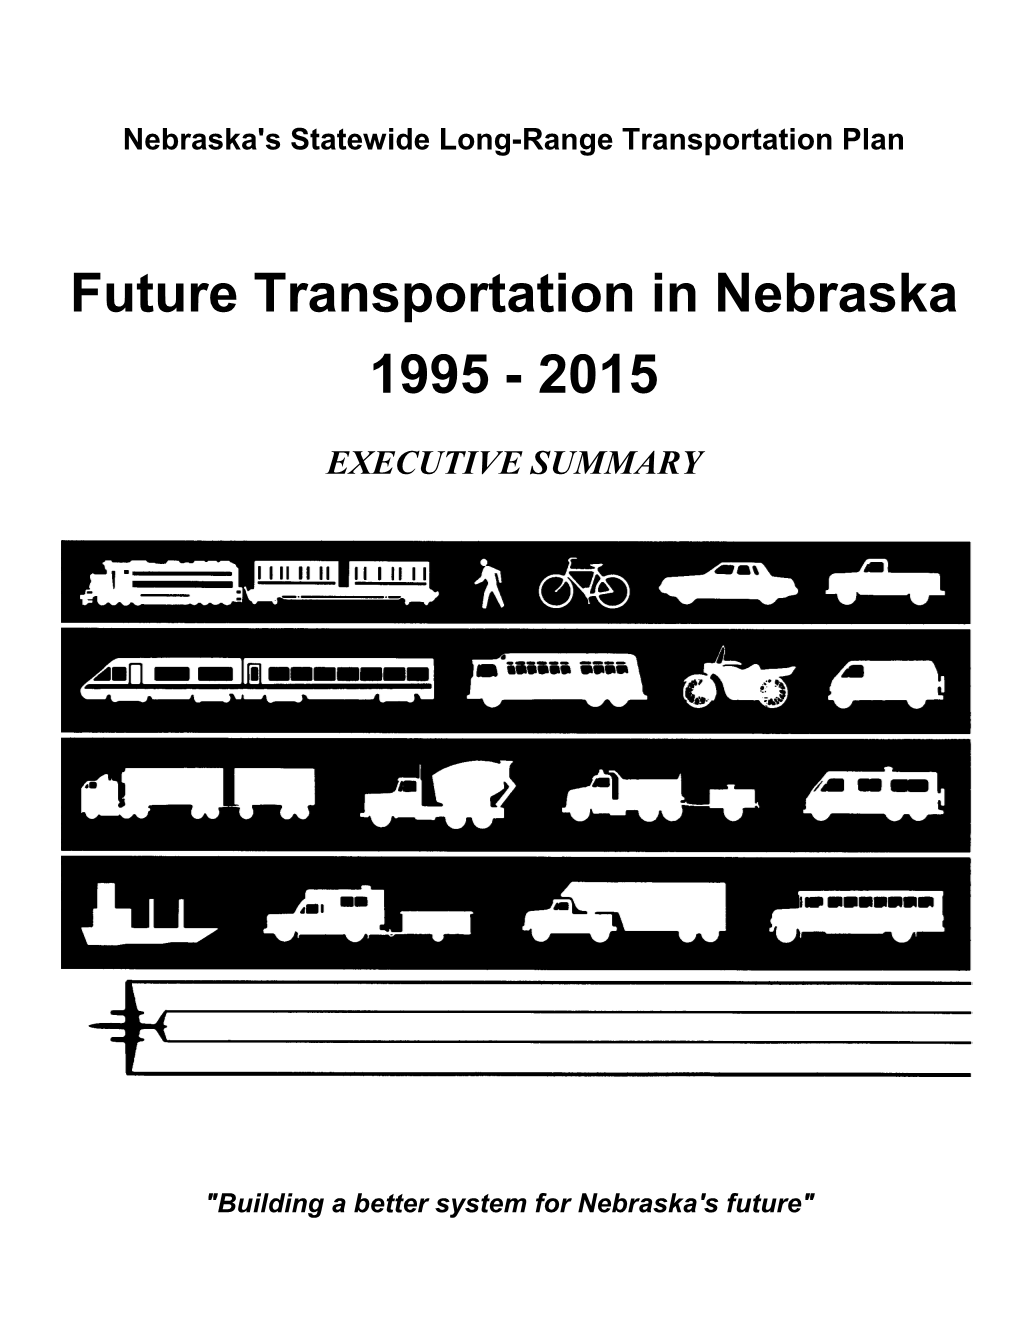 Future Transportation in Nebraska 1995 - 2015